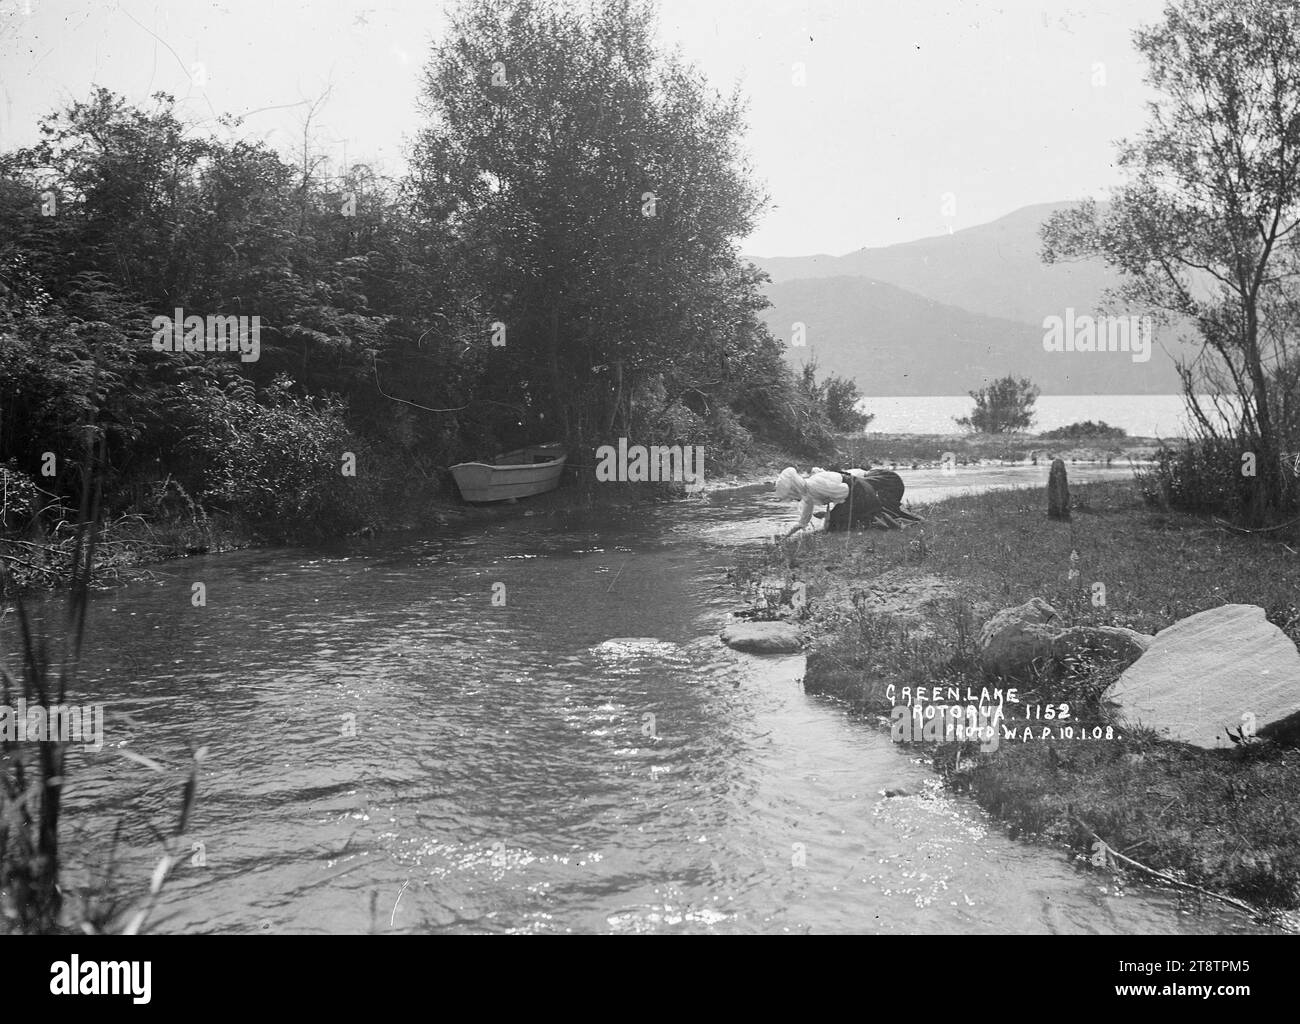 Frauen am Rotokakahi-See, Blick auf zwei Frauen an einem Fluss, der in den Rotokakahi-See mündet. Die Frauen knieten am Wasserrand nieder und sahen etwas im Wasser an. Auf der gegenüberliegenden Seite des Baches, zwischen Bäumen am Wasserrand, befindet sich ein Schlauchboot. Der See ist in der Ferne zu sehen. Foto aufgenommen im Januar 1908 Stockfoto